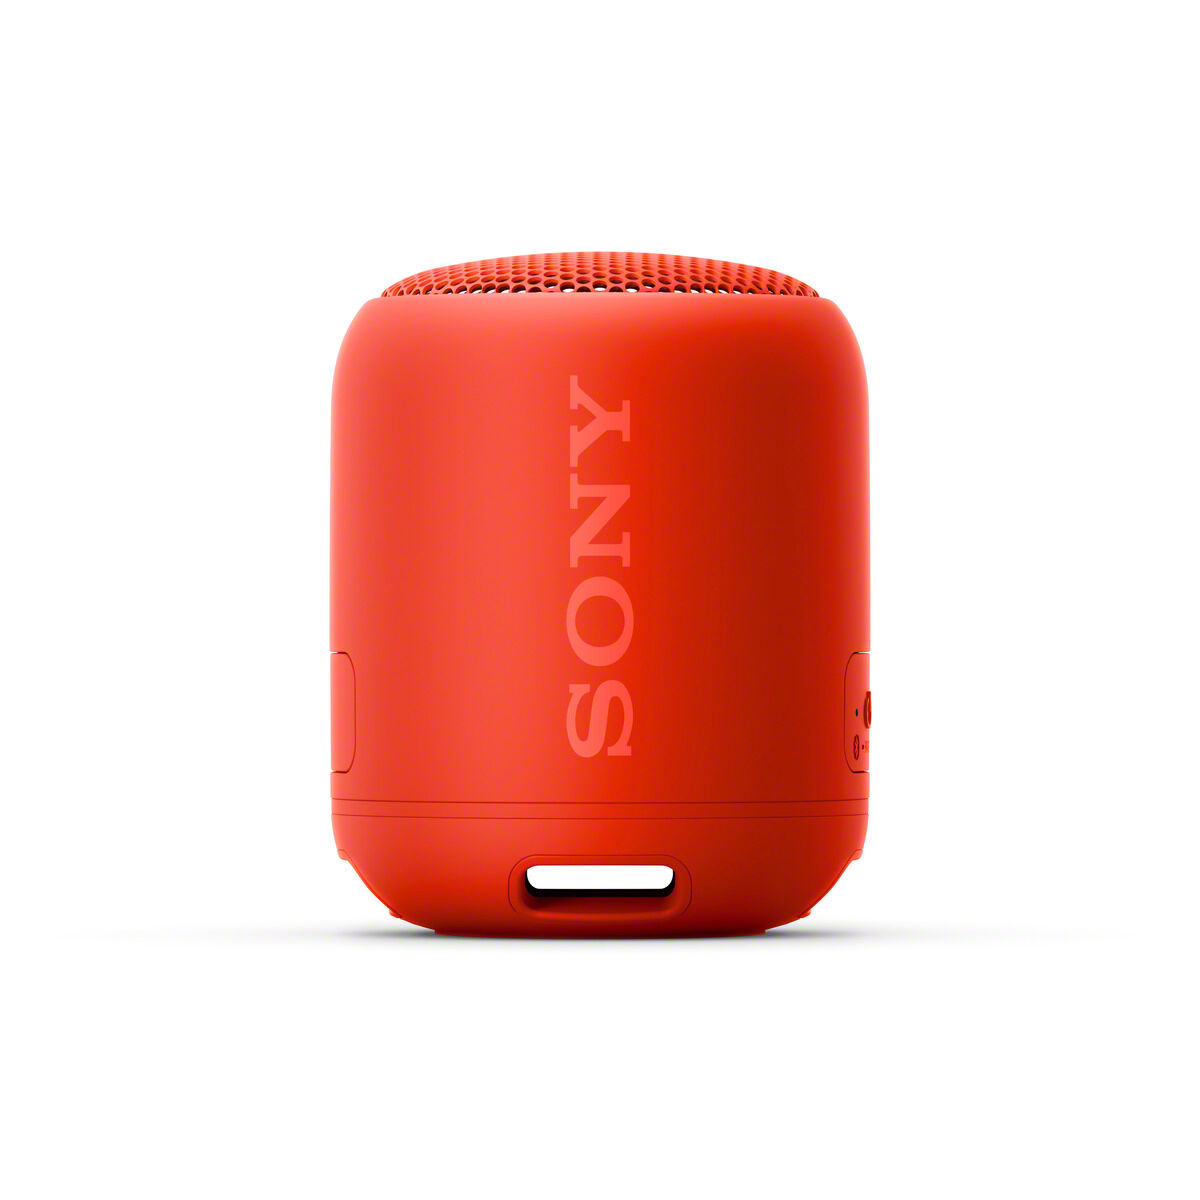 Boxa portabila SRSXB12B Sony, Extra Bass, Bluetooth Wi-Fi, 16h Autonomie, Rezistenta la apa IP67, Rosu